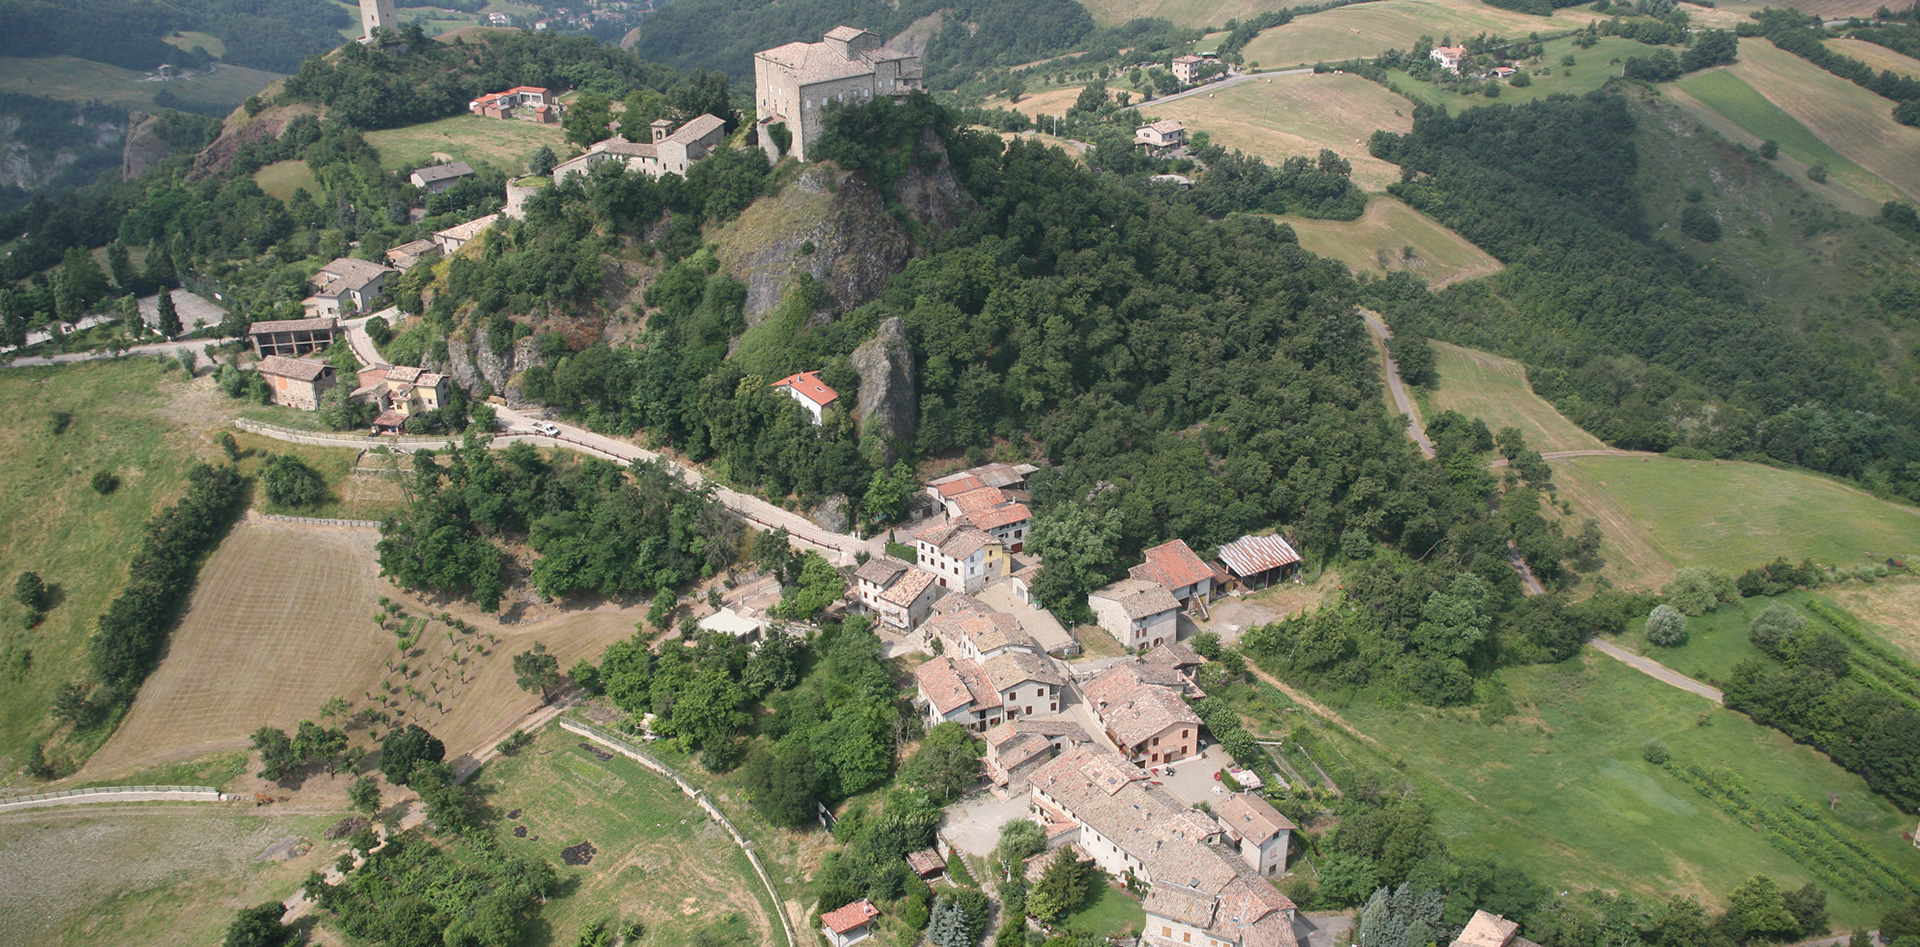 Borgo di Rossena, Binini Partners, Società di architettura e ingegneria